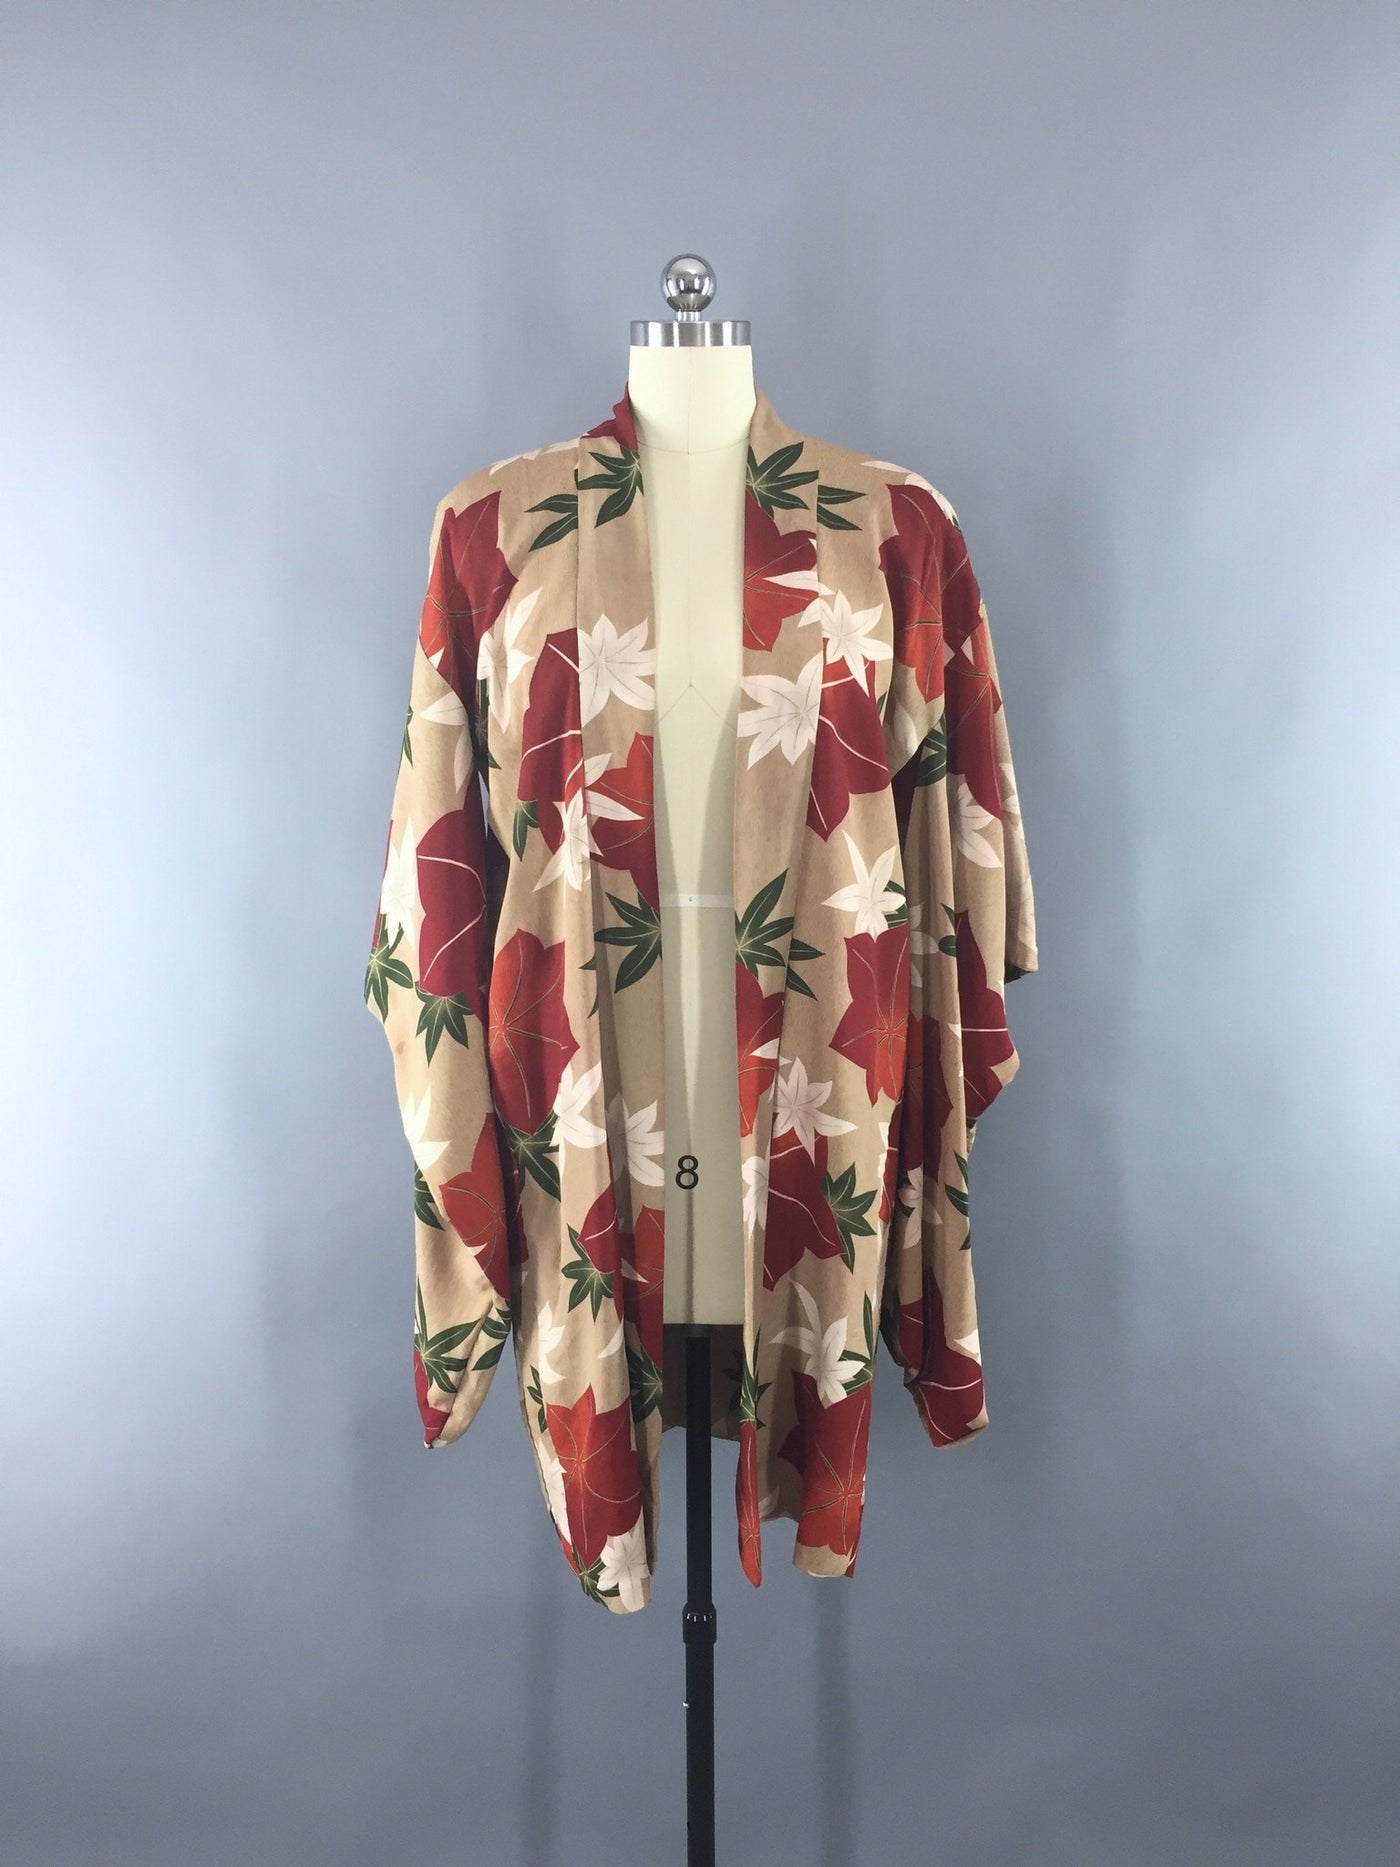 1930s Vintage Silk Haori Kimono Jacket Cardigan with Autumn Floral Leaves Print - ThisBlueBird